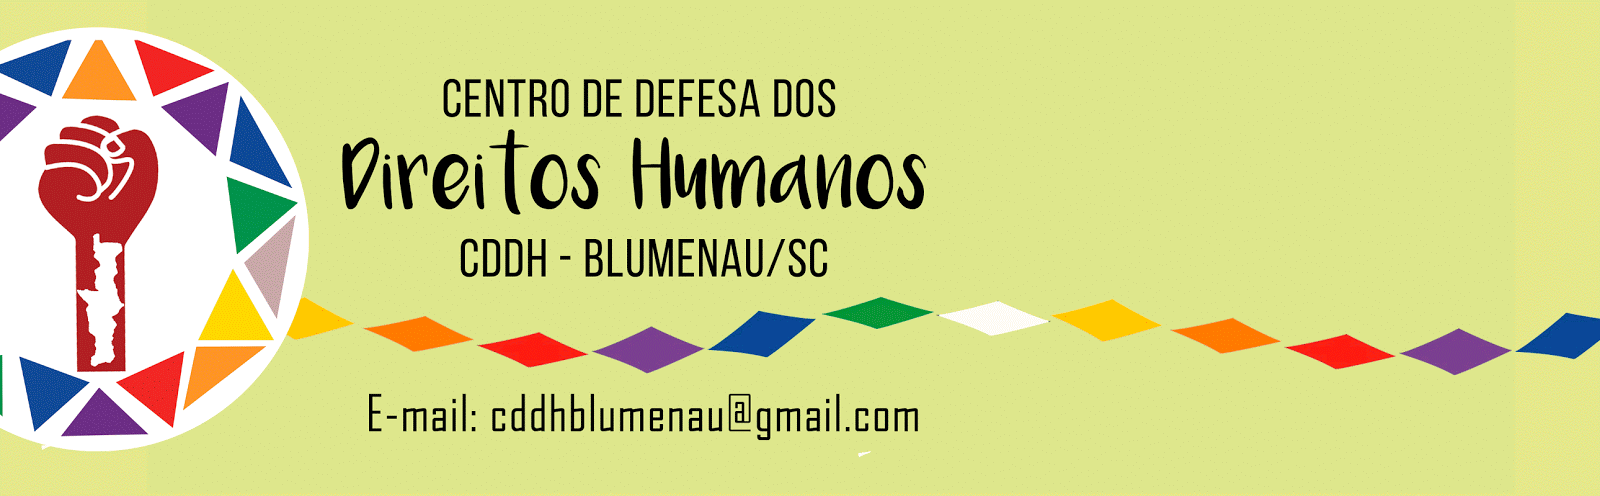 CENTRO DE DEFESA DOS DIREITOS HUMANOS - Blumenau/SC